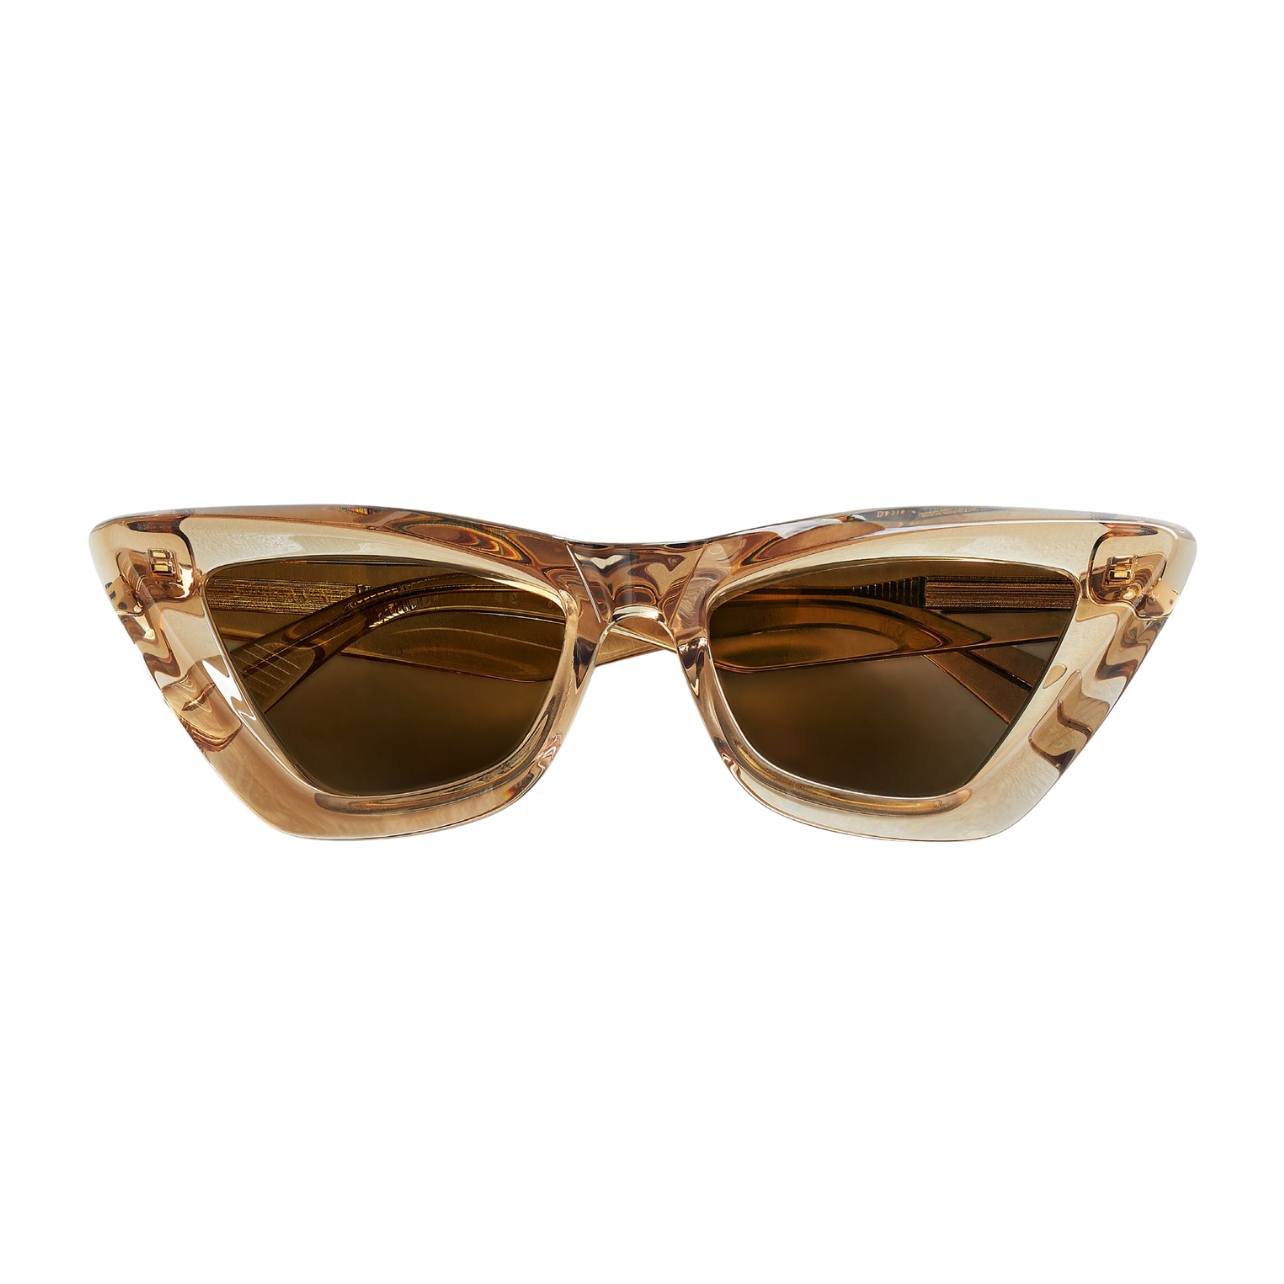 Portrait of brown angled Bottega sunglasses